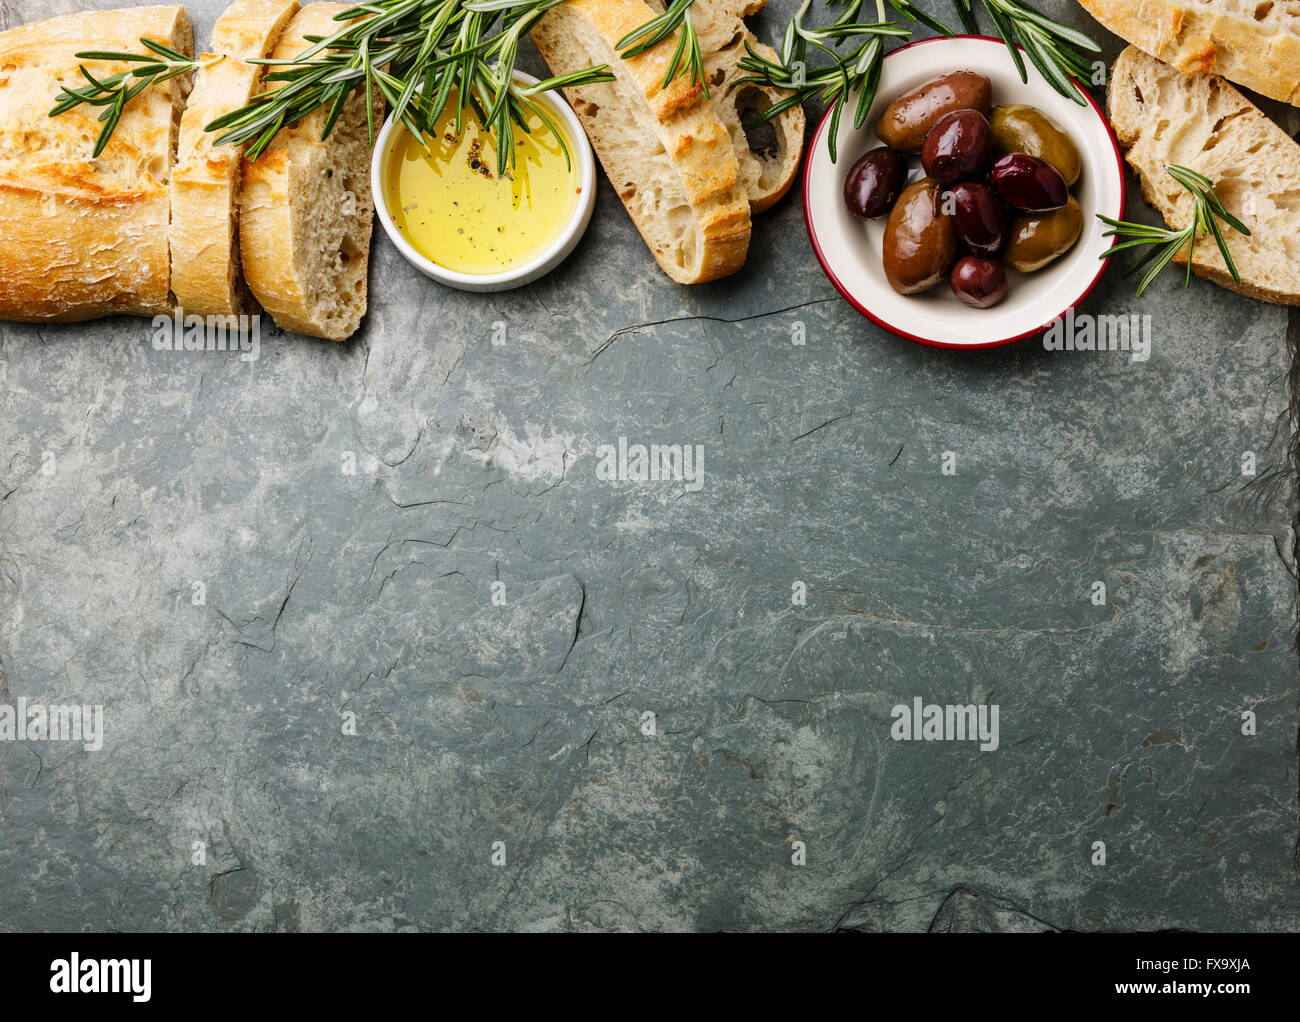 Ingrédients alimentaires italien de fond avec des tranches de pain ciabatta, huile d'olive, les olives et le romarin sur ardoise gris Banque D'Images